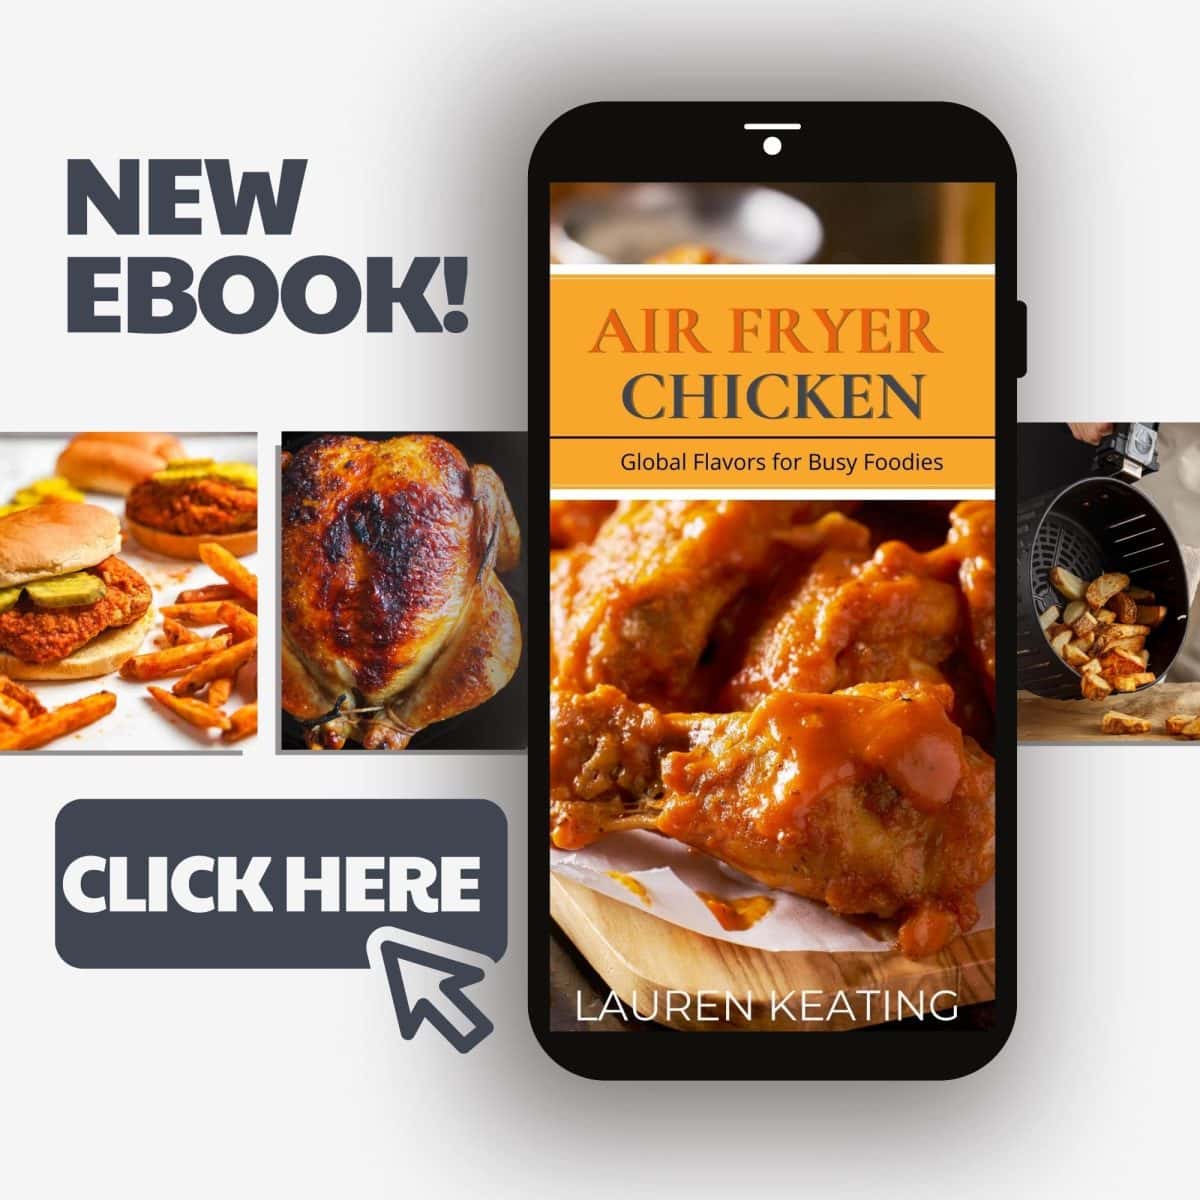 Air Fryer Chicken eBook on sale now!